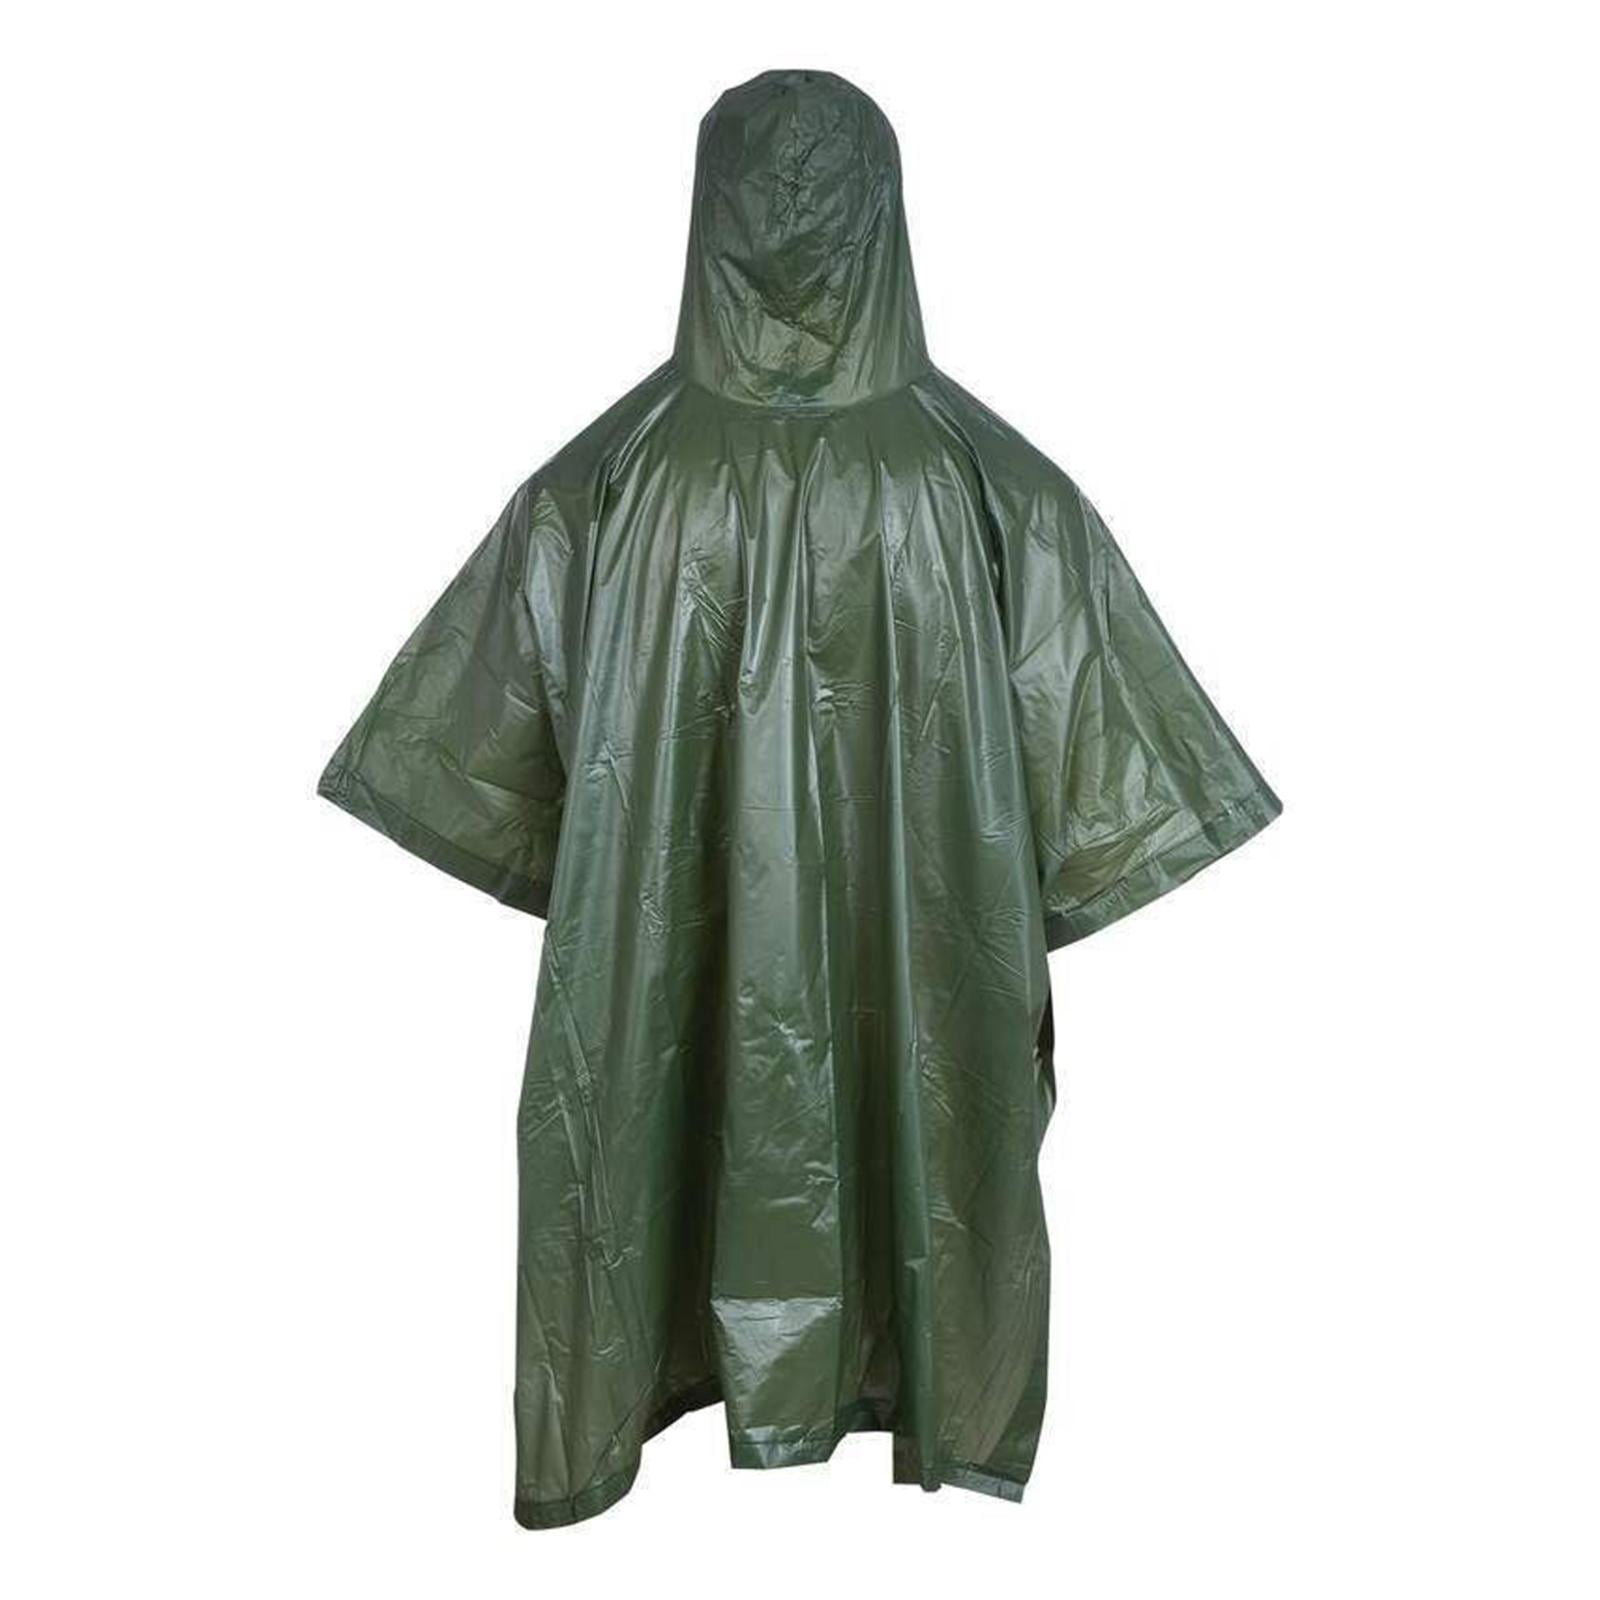 Details about   Raincoat Hooded Rain Coat Jacket Outdoors Poncho Ground Sheet Eyelet Shelter 